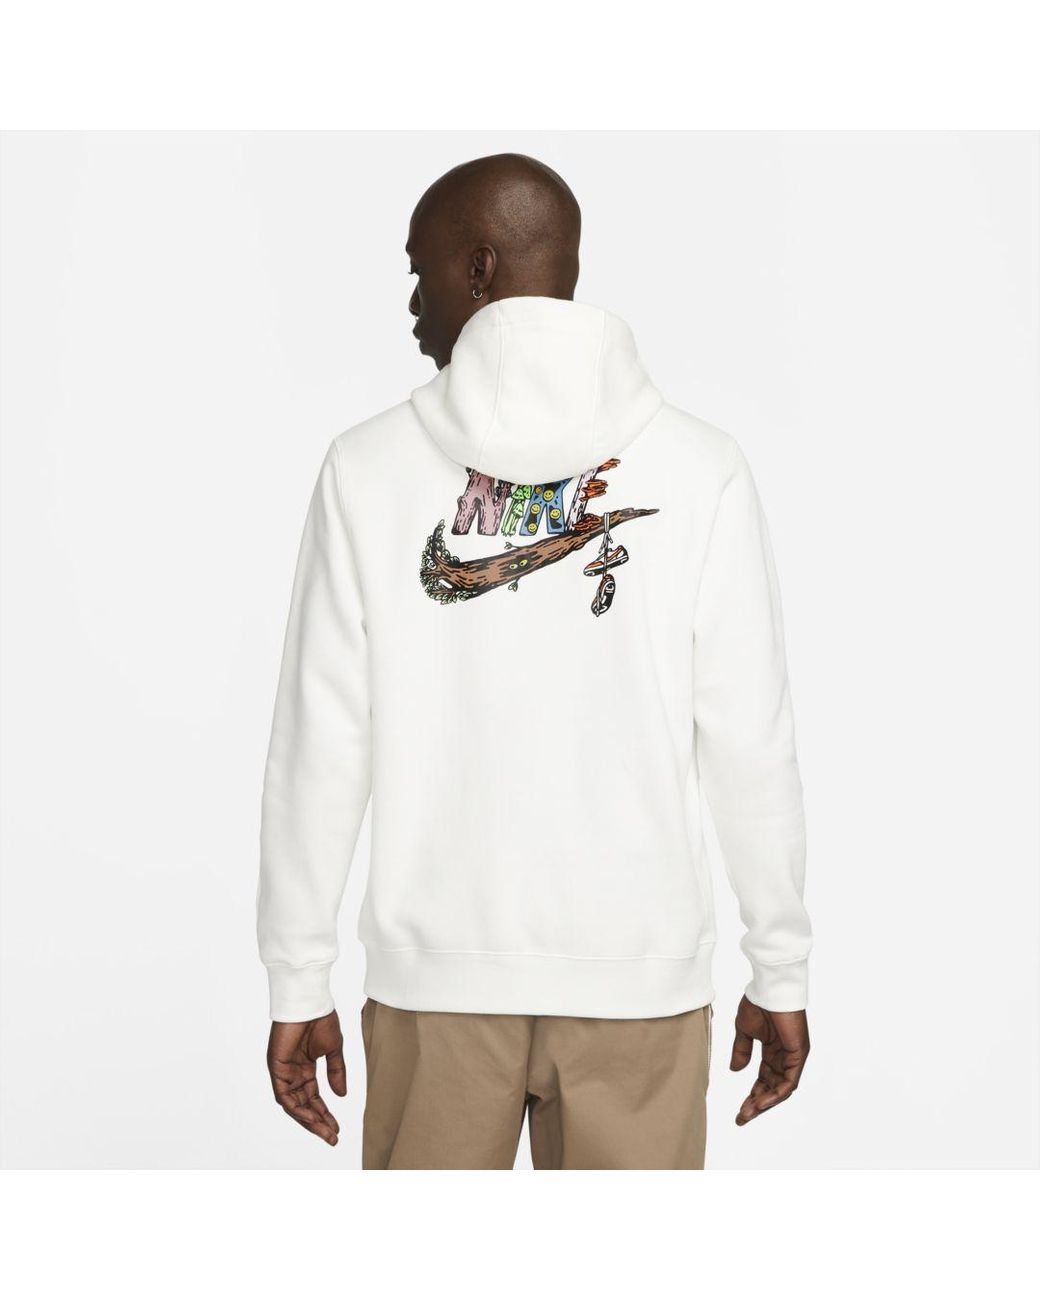 Nike Fleece Sportswear Fantasy Creature Hoodie in White for Men - Lyst